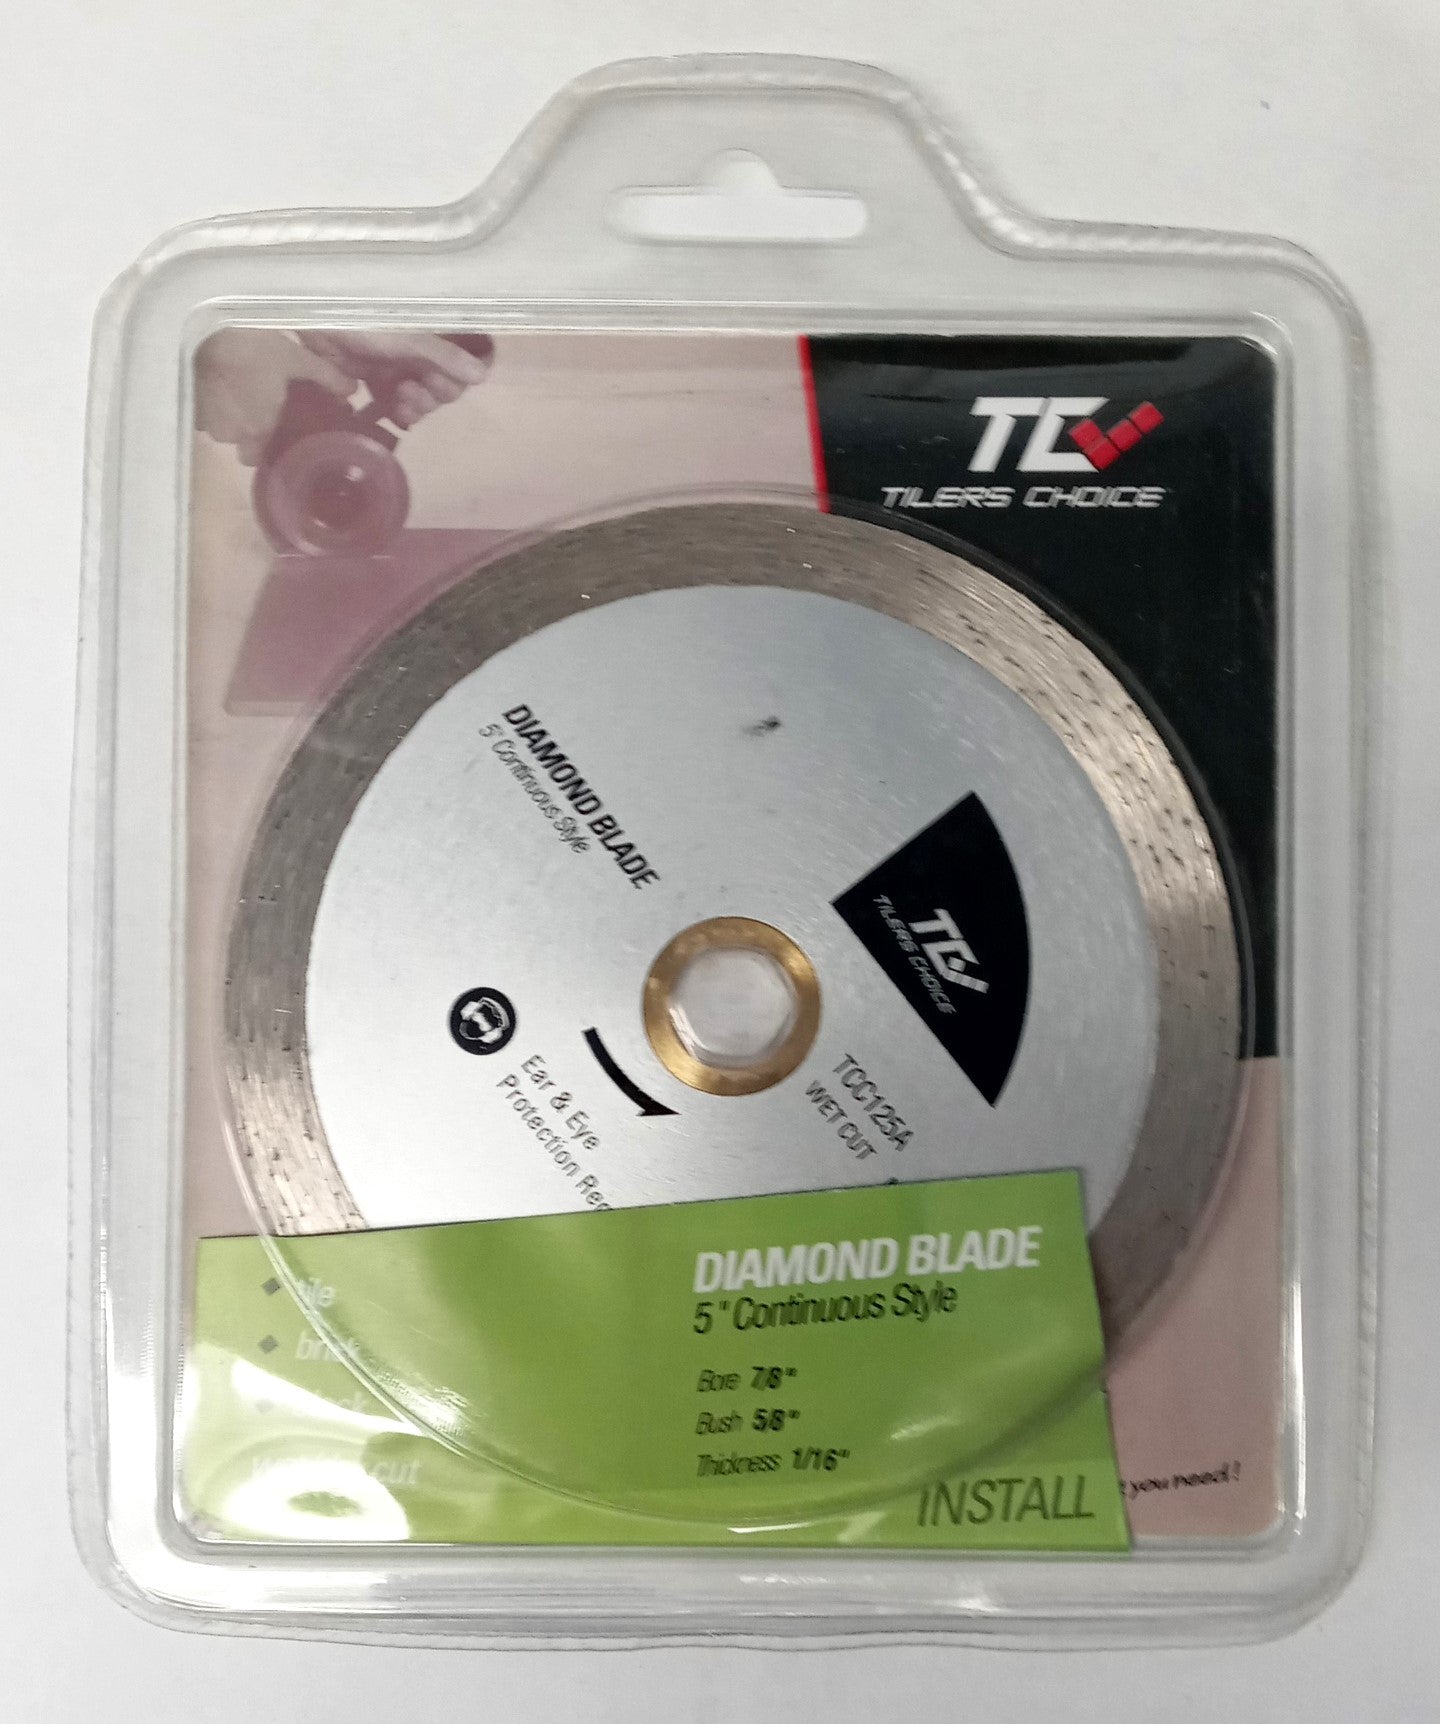 DTA TCC125A Tiler's Choice 5" Continuous Rim Diamond Blade for Tile